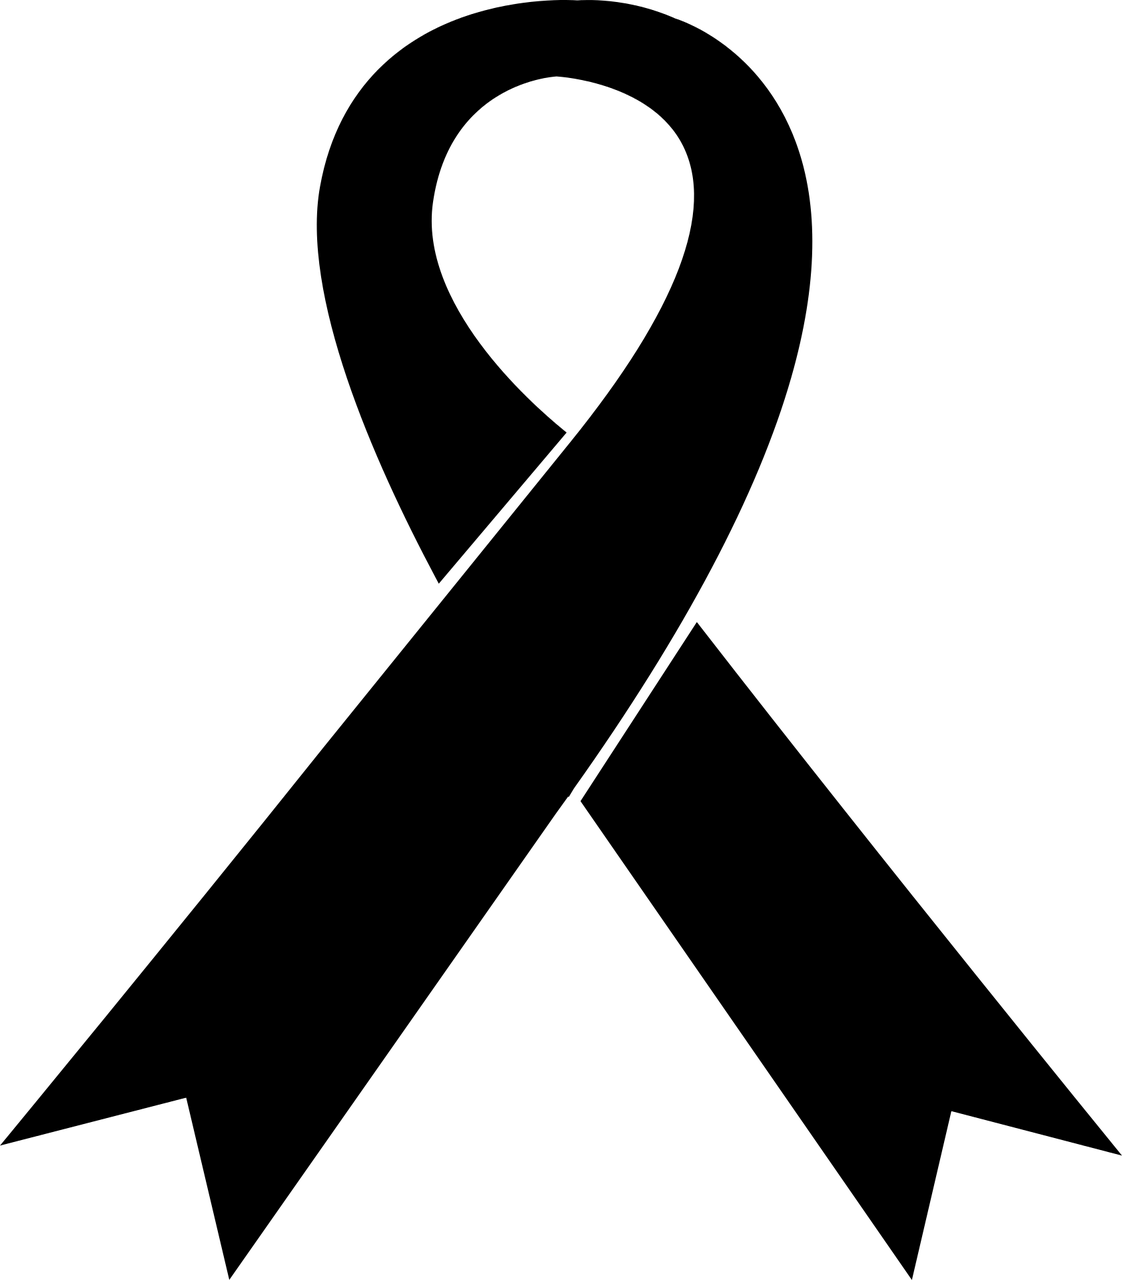 Grafika przedstawia czarną żałobną wstążkę